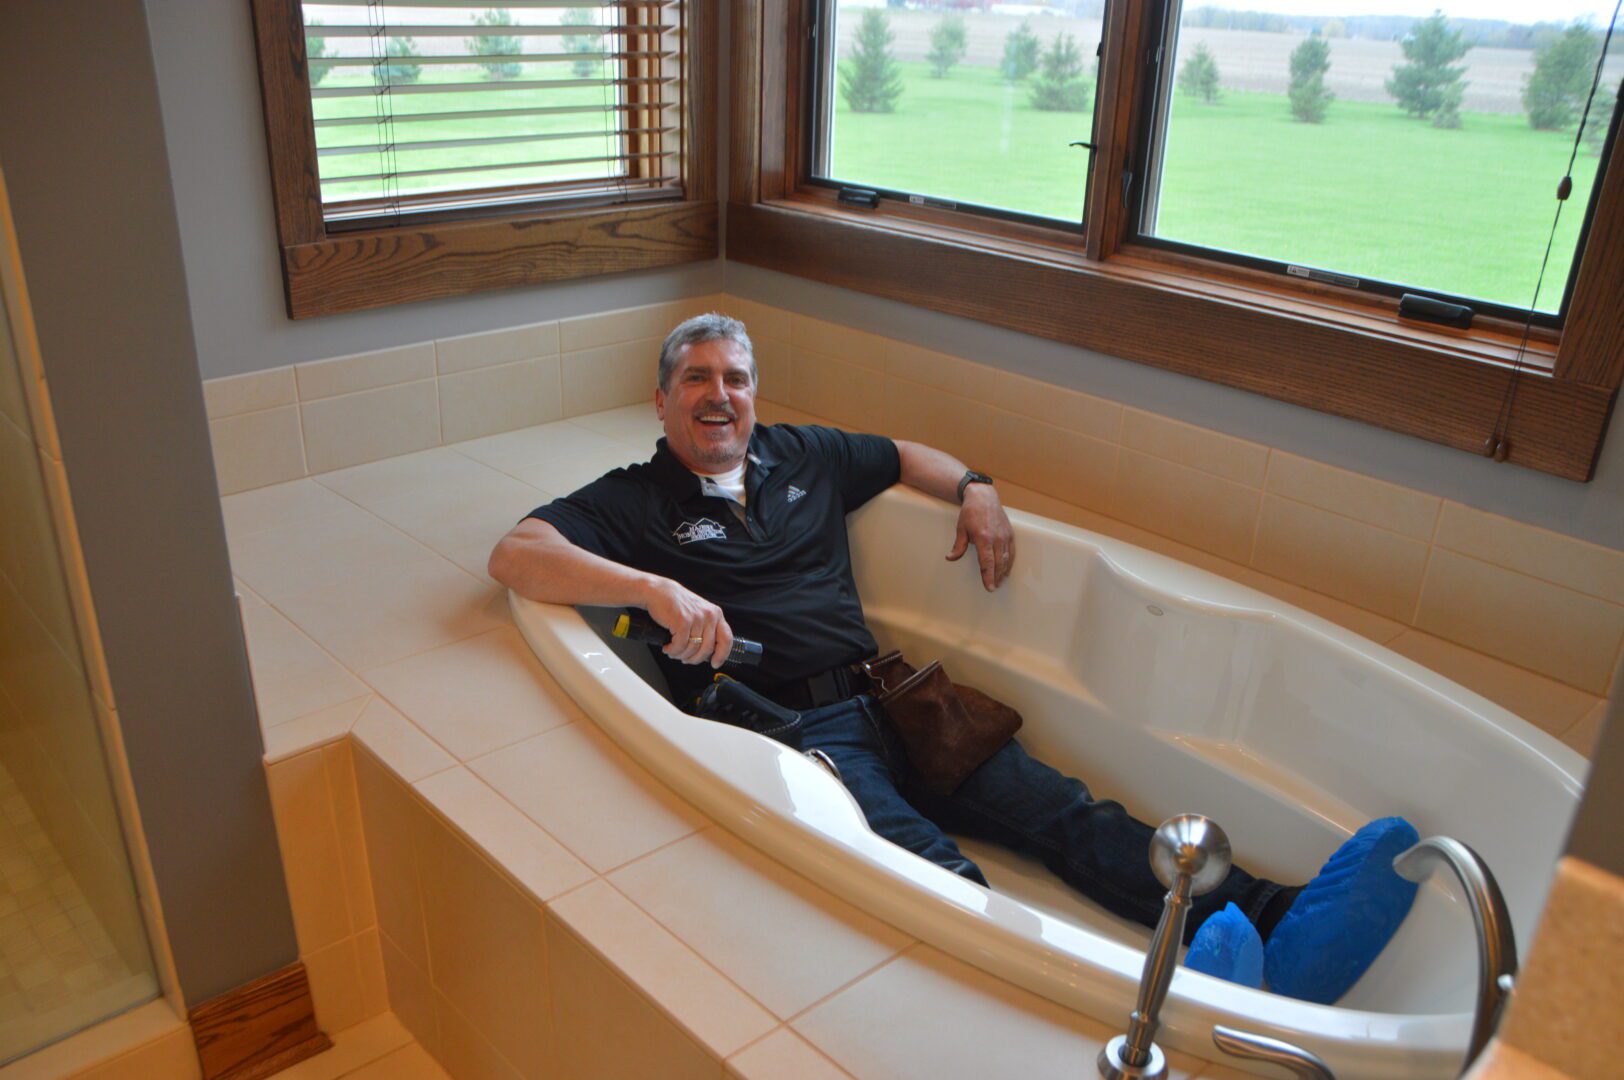 A man sitting inside the bathtub